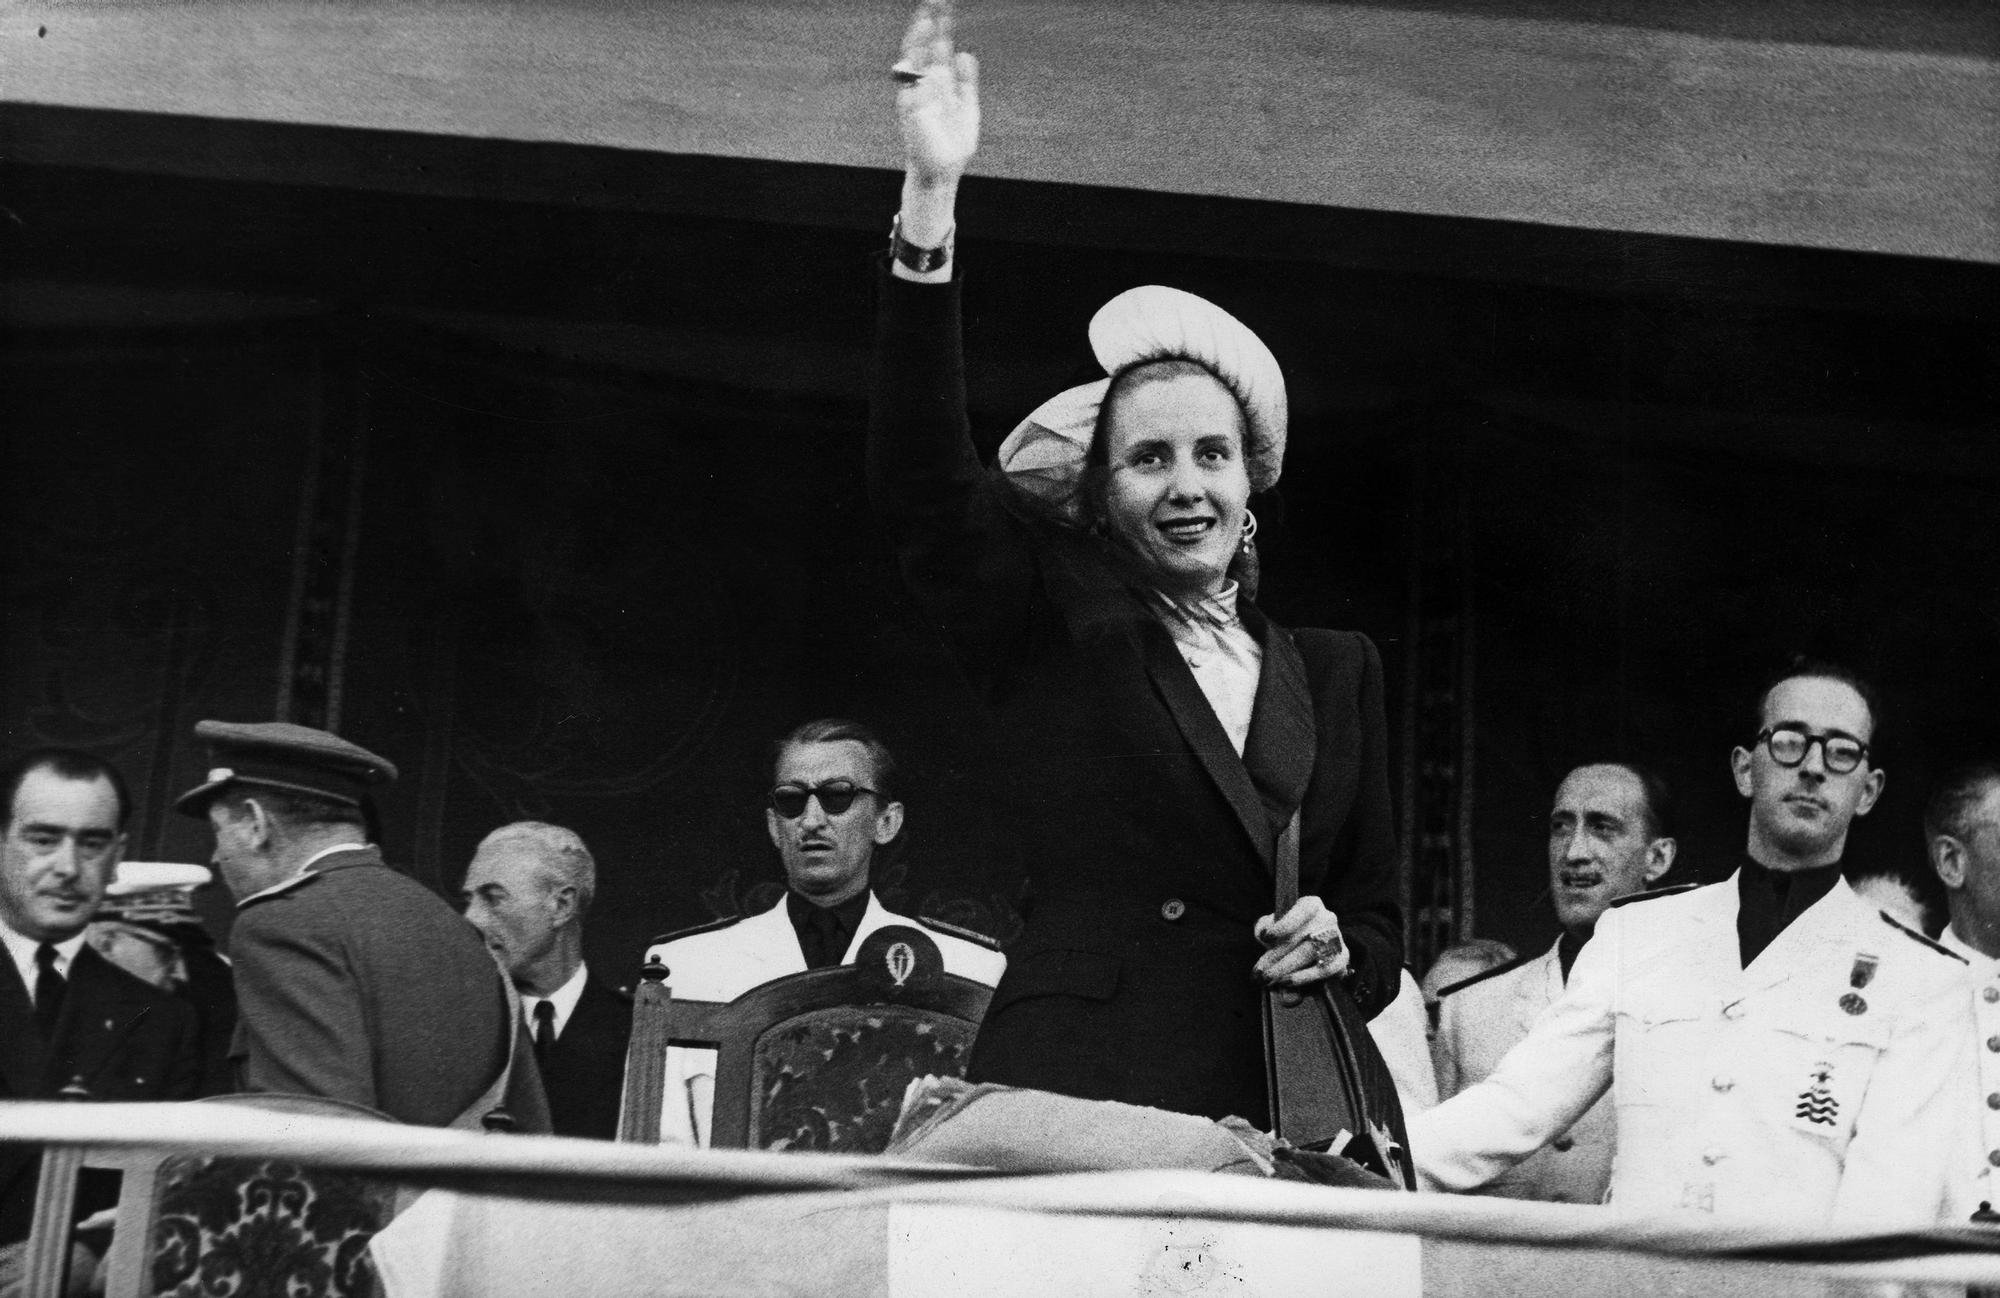 “Evita” Perón - Primeira dama da República Arxentina (1947)